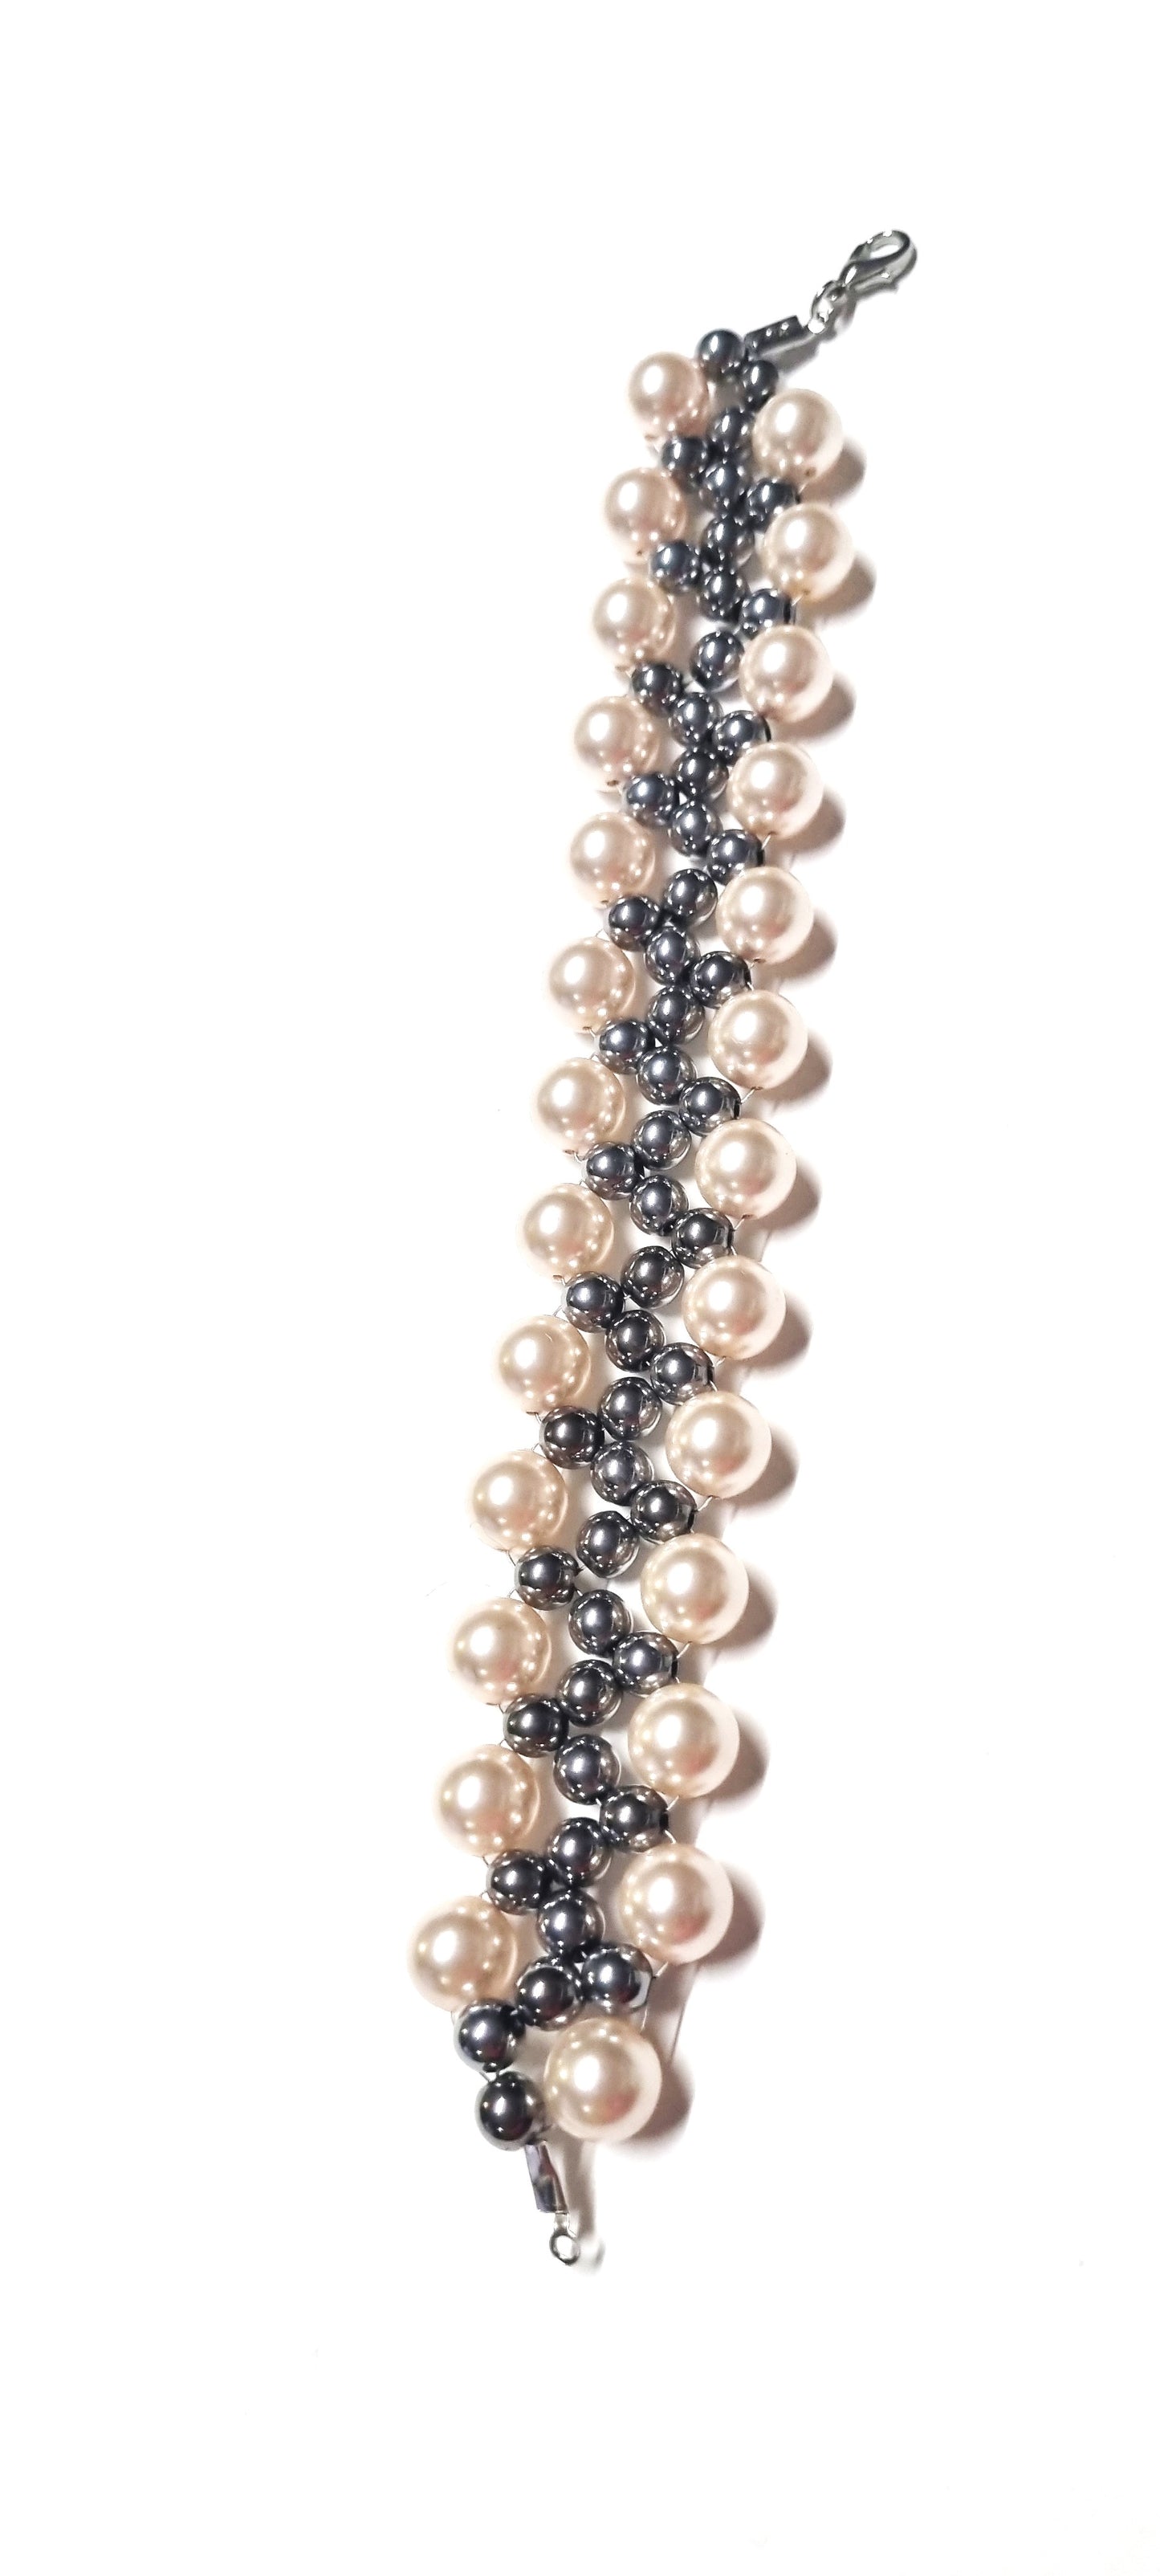 Collana LE PERLE .047 perline grigio lucido ematite, montate a spirale con perle cristallo